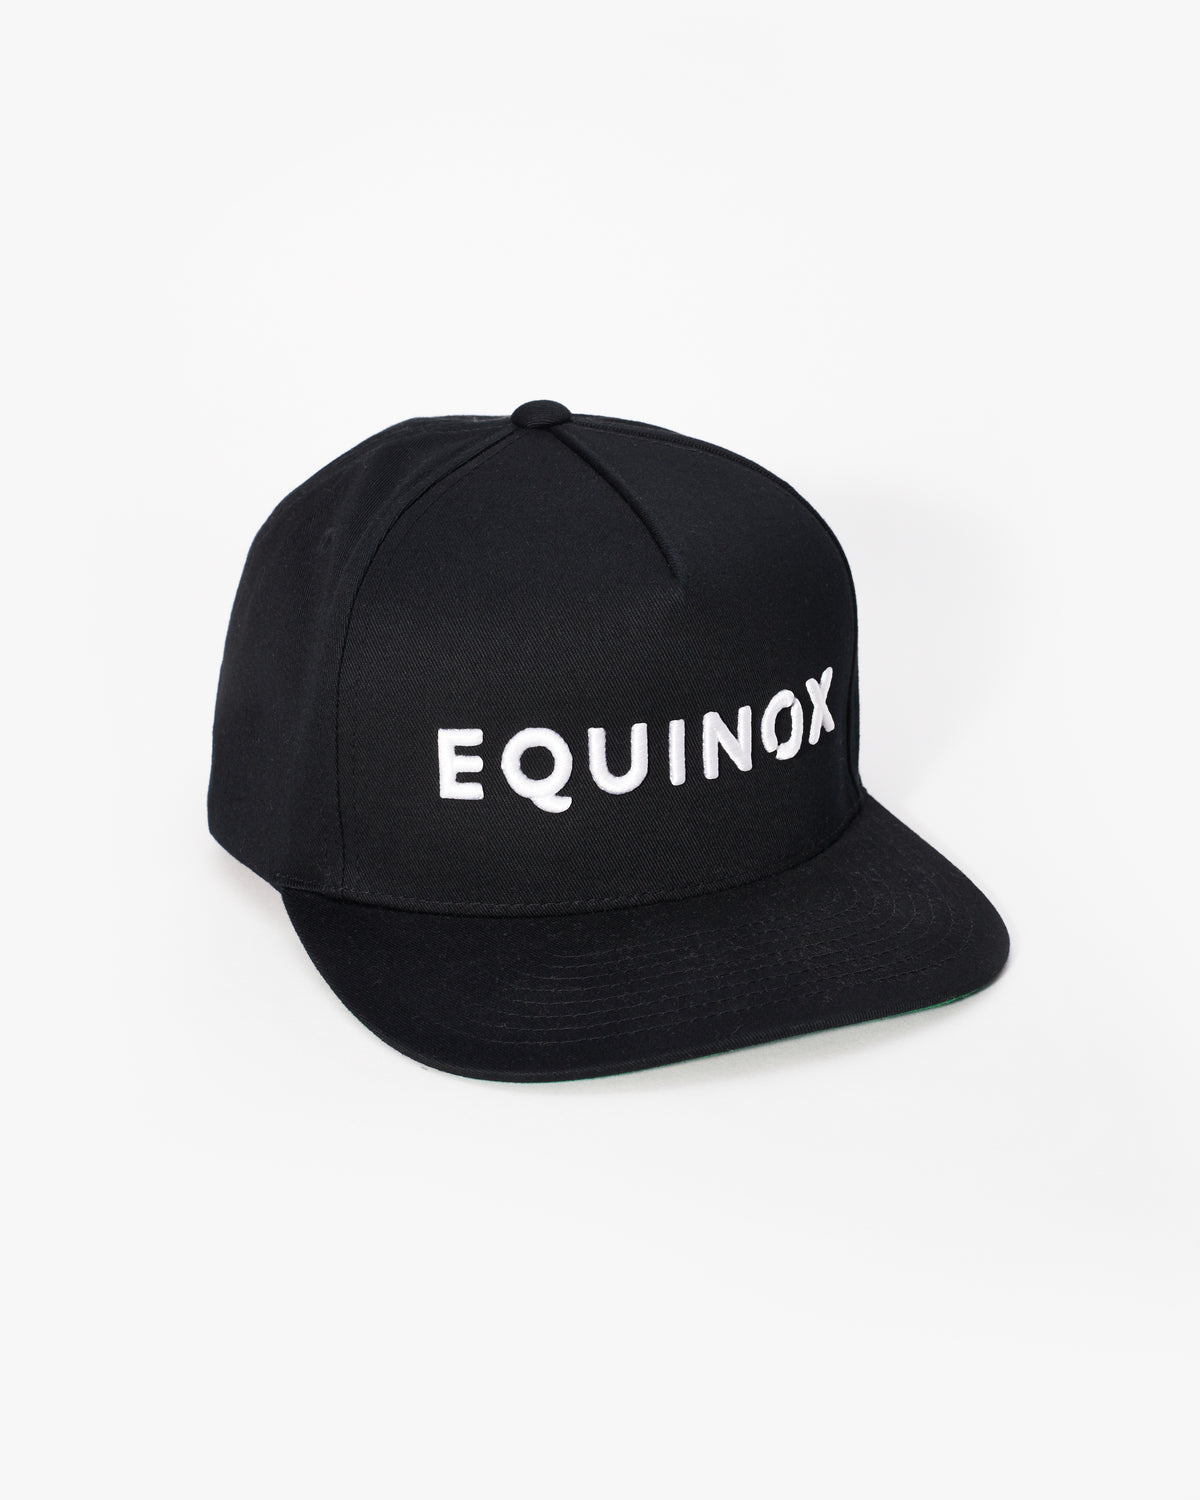 Equinox Snapback Flat Brim Hat – The Shop at Equinox